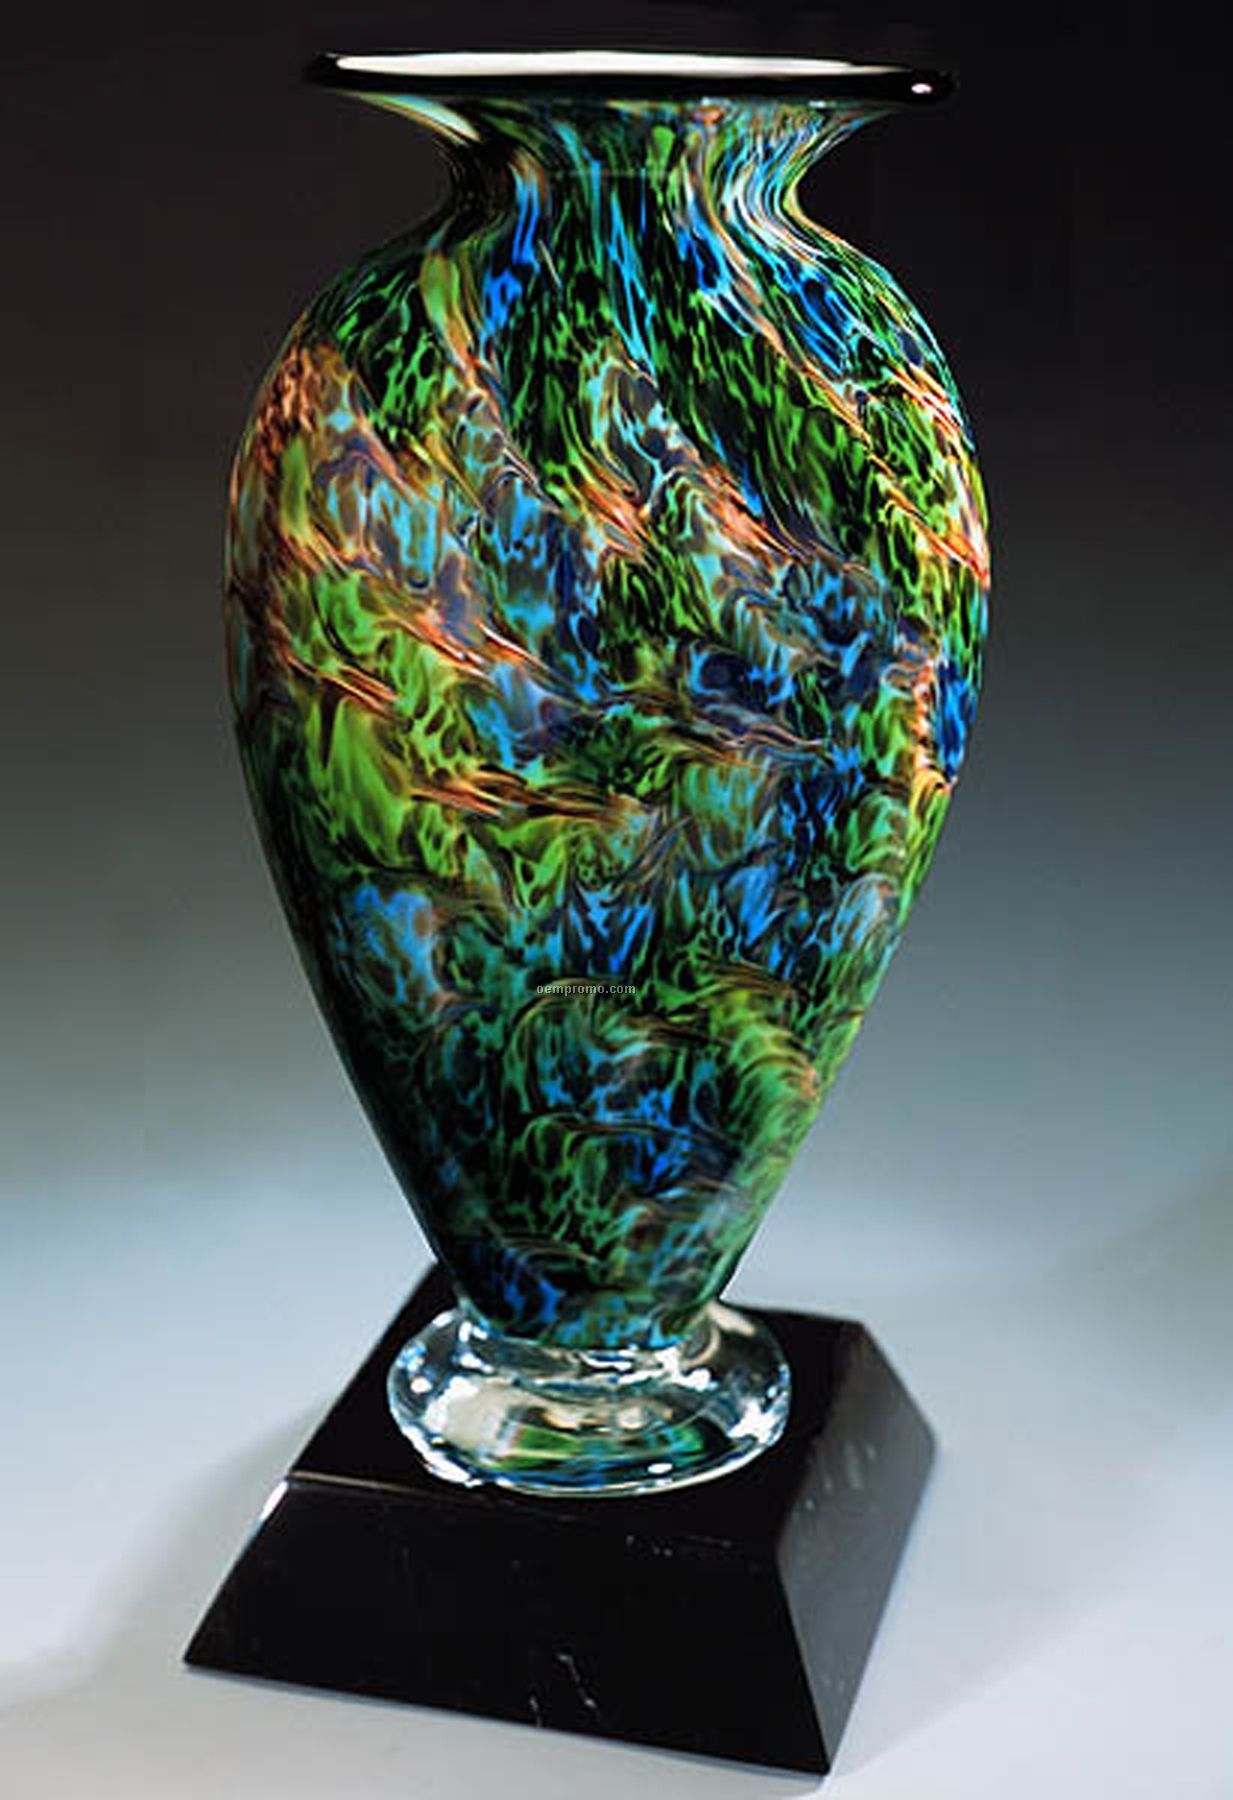 Jade Glen Mercury Sculpture Award W/ Marble Base (5"X11.5")